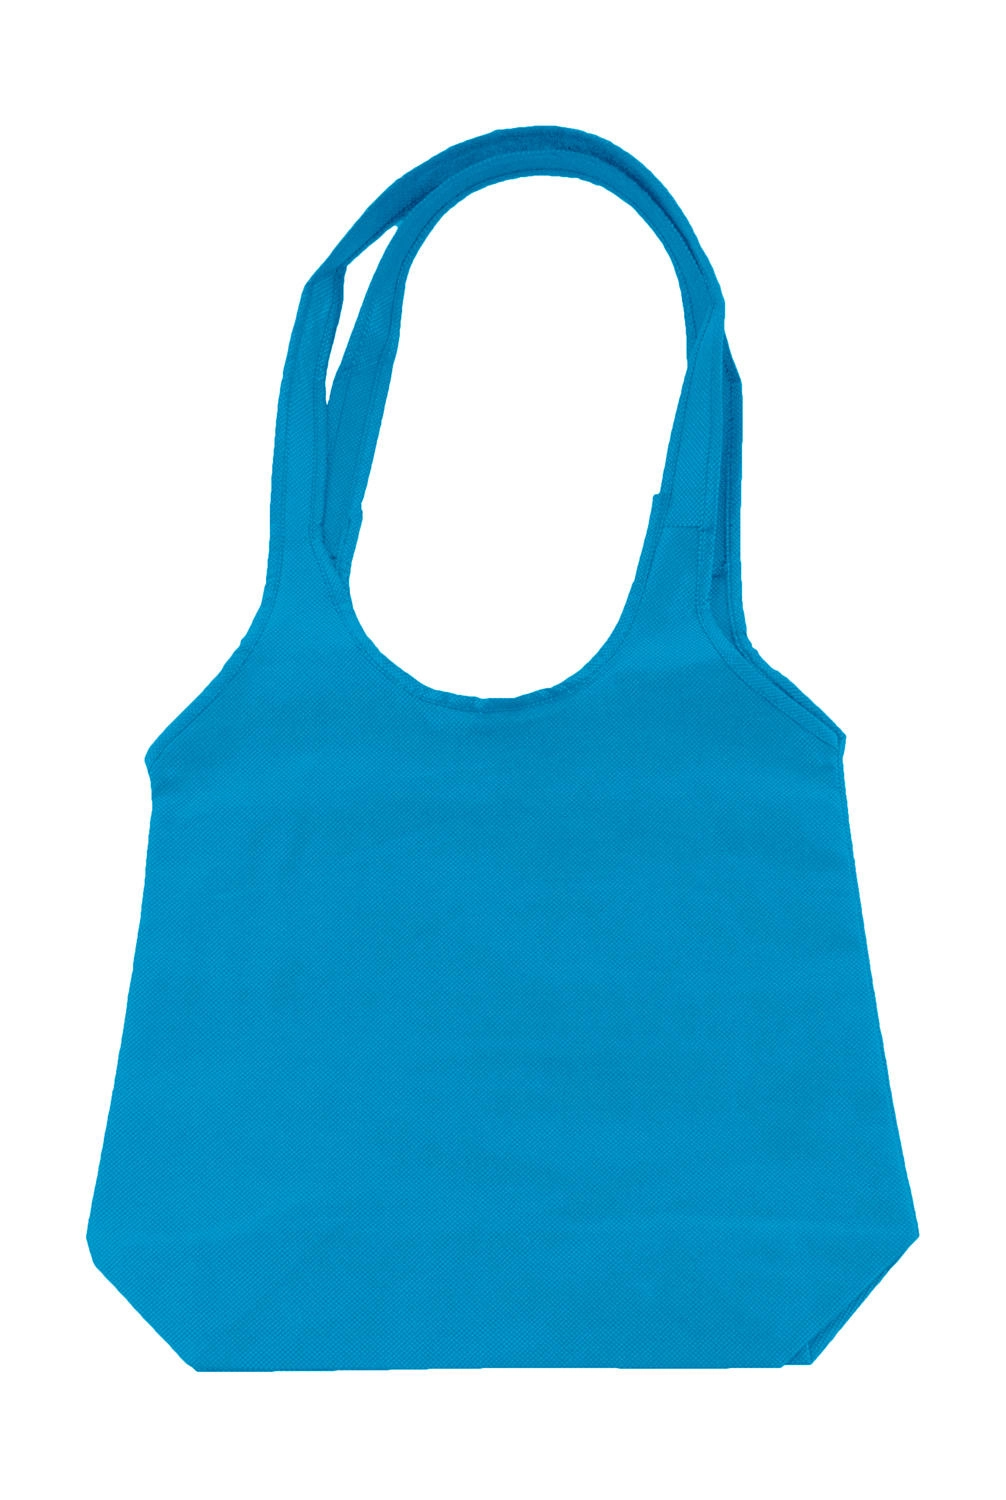 Fashion Shopper zum Besticken und Bedrucken in der Farbe Mid Blue mit Ihren Logo, Schriftzug oder Motiv.